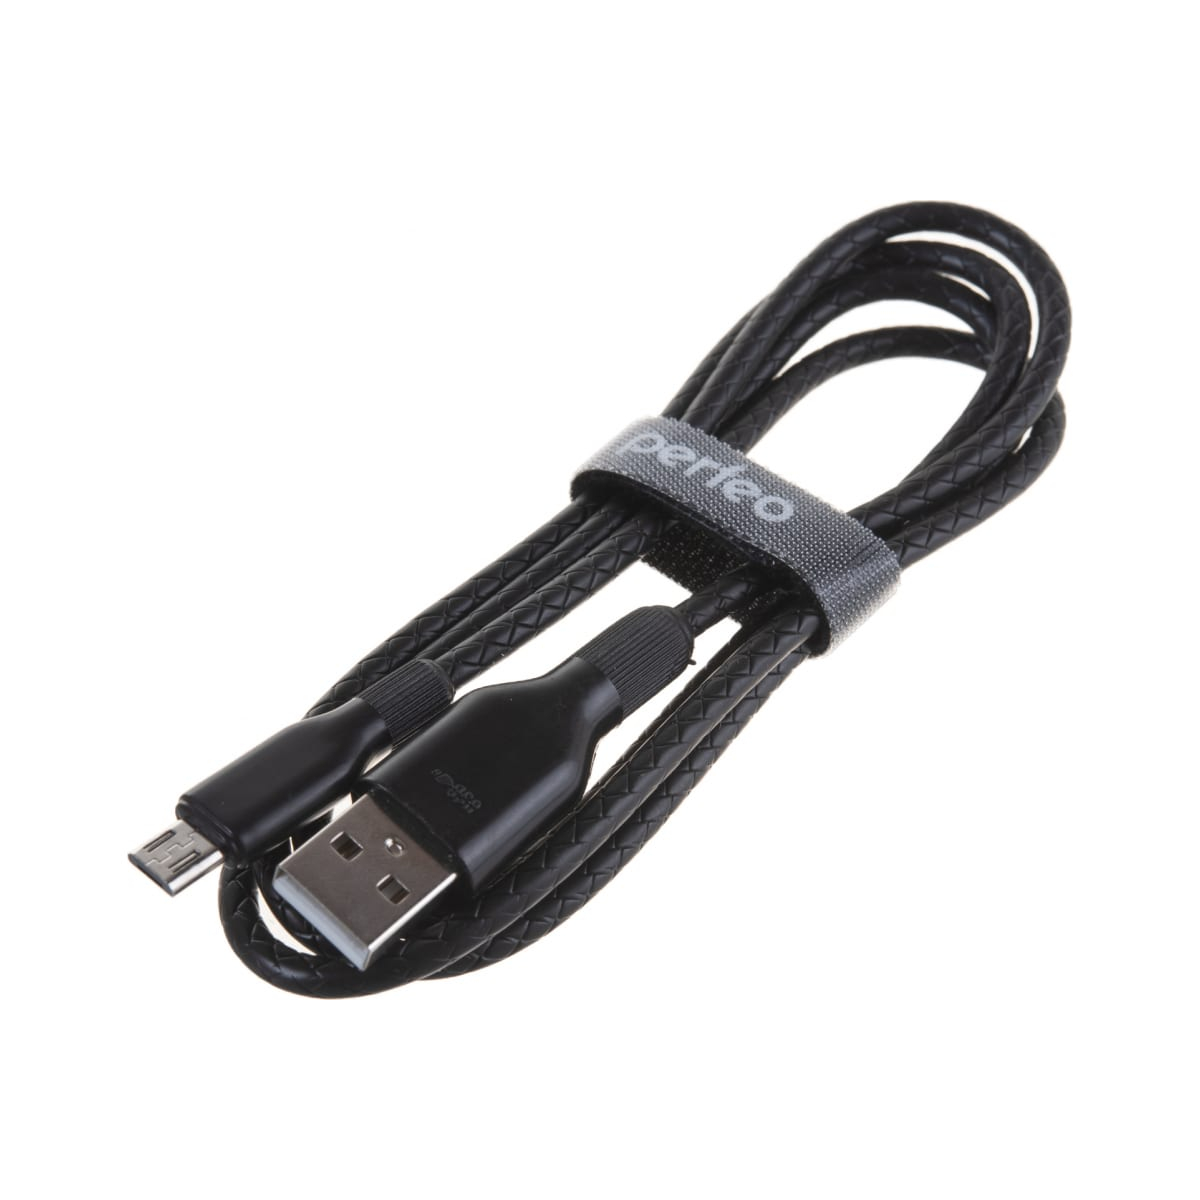 Кабель Perfeo U4807 USB 2.0 A вилка - Micro USB вилка 1 м black шлейф ffc 5 pin шаг 0 5mm длина 15cm прямой a a awm 20624 80c 60v vw 1